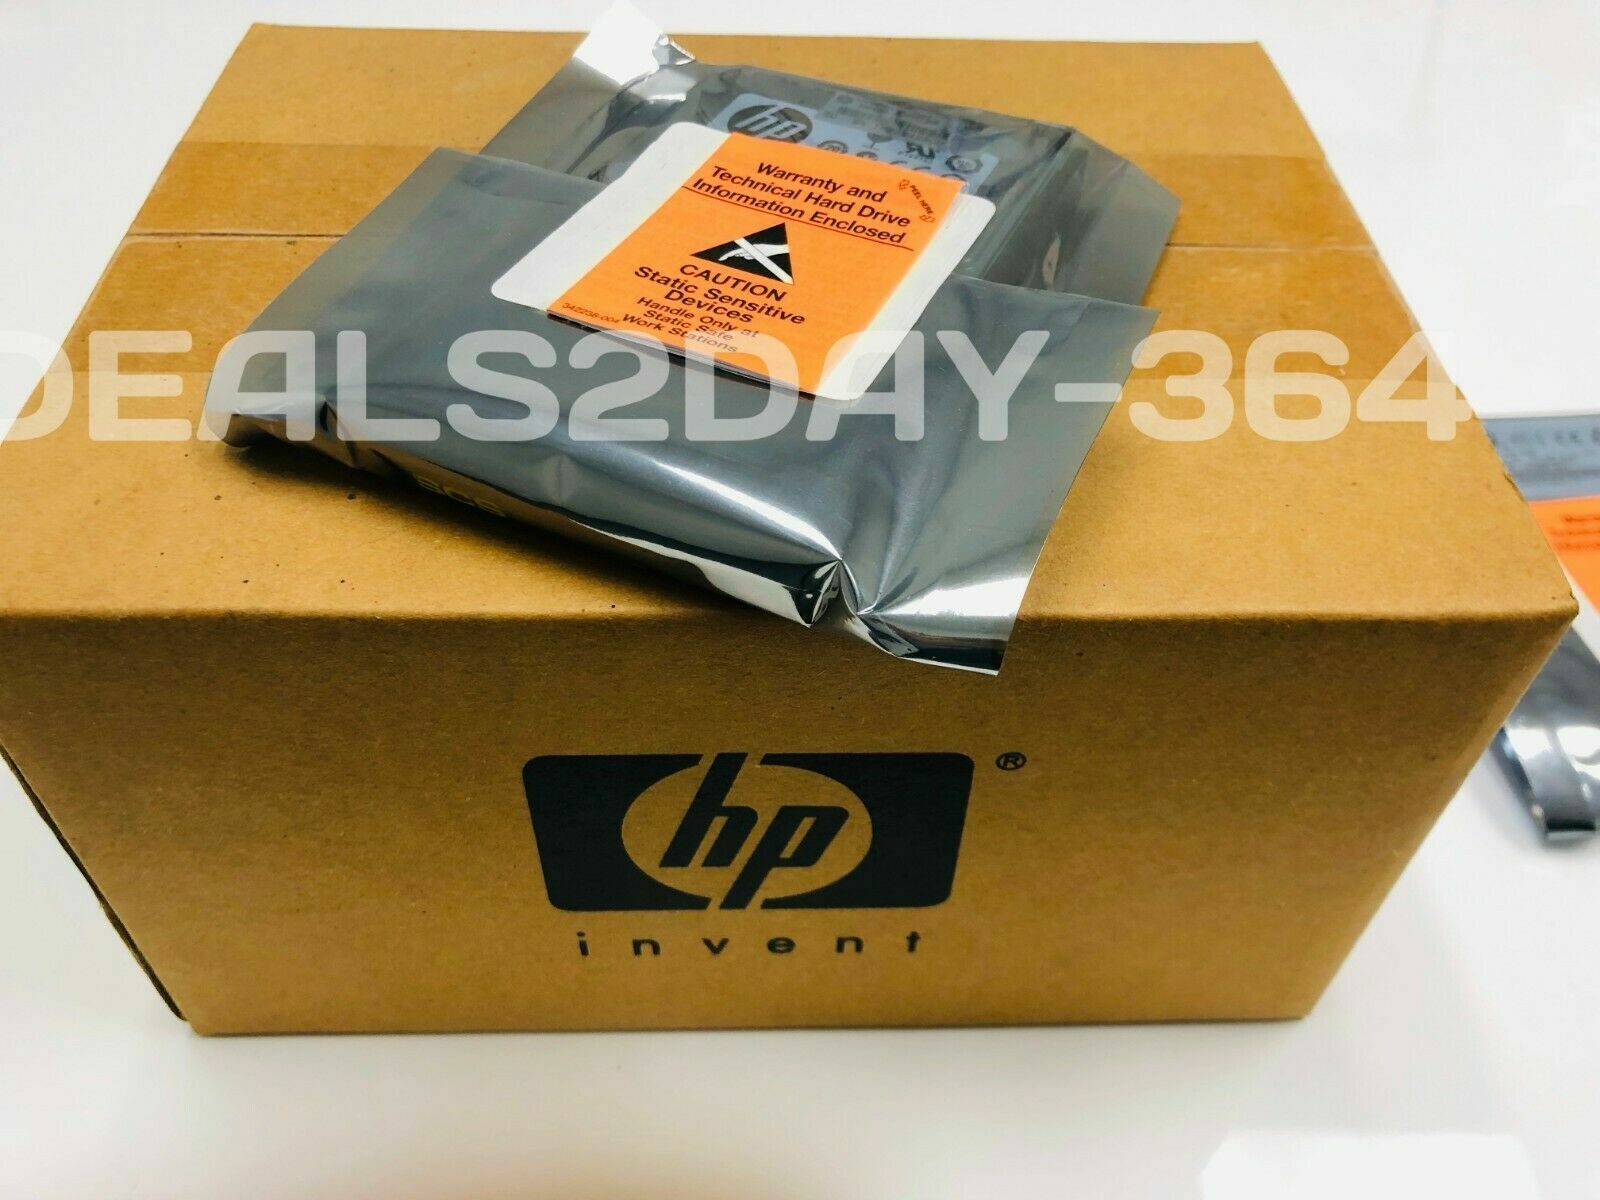 LOT OF 10 HP 507284-001 300GB 10K 6G 2.5 SAS DUAL PORT HDD HARD DRIVE NEW BULK